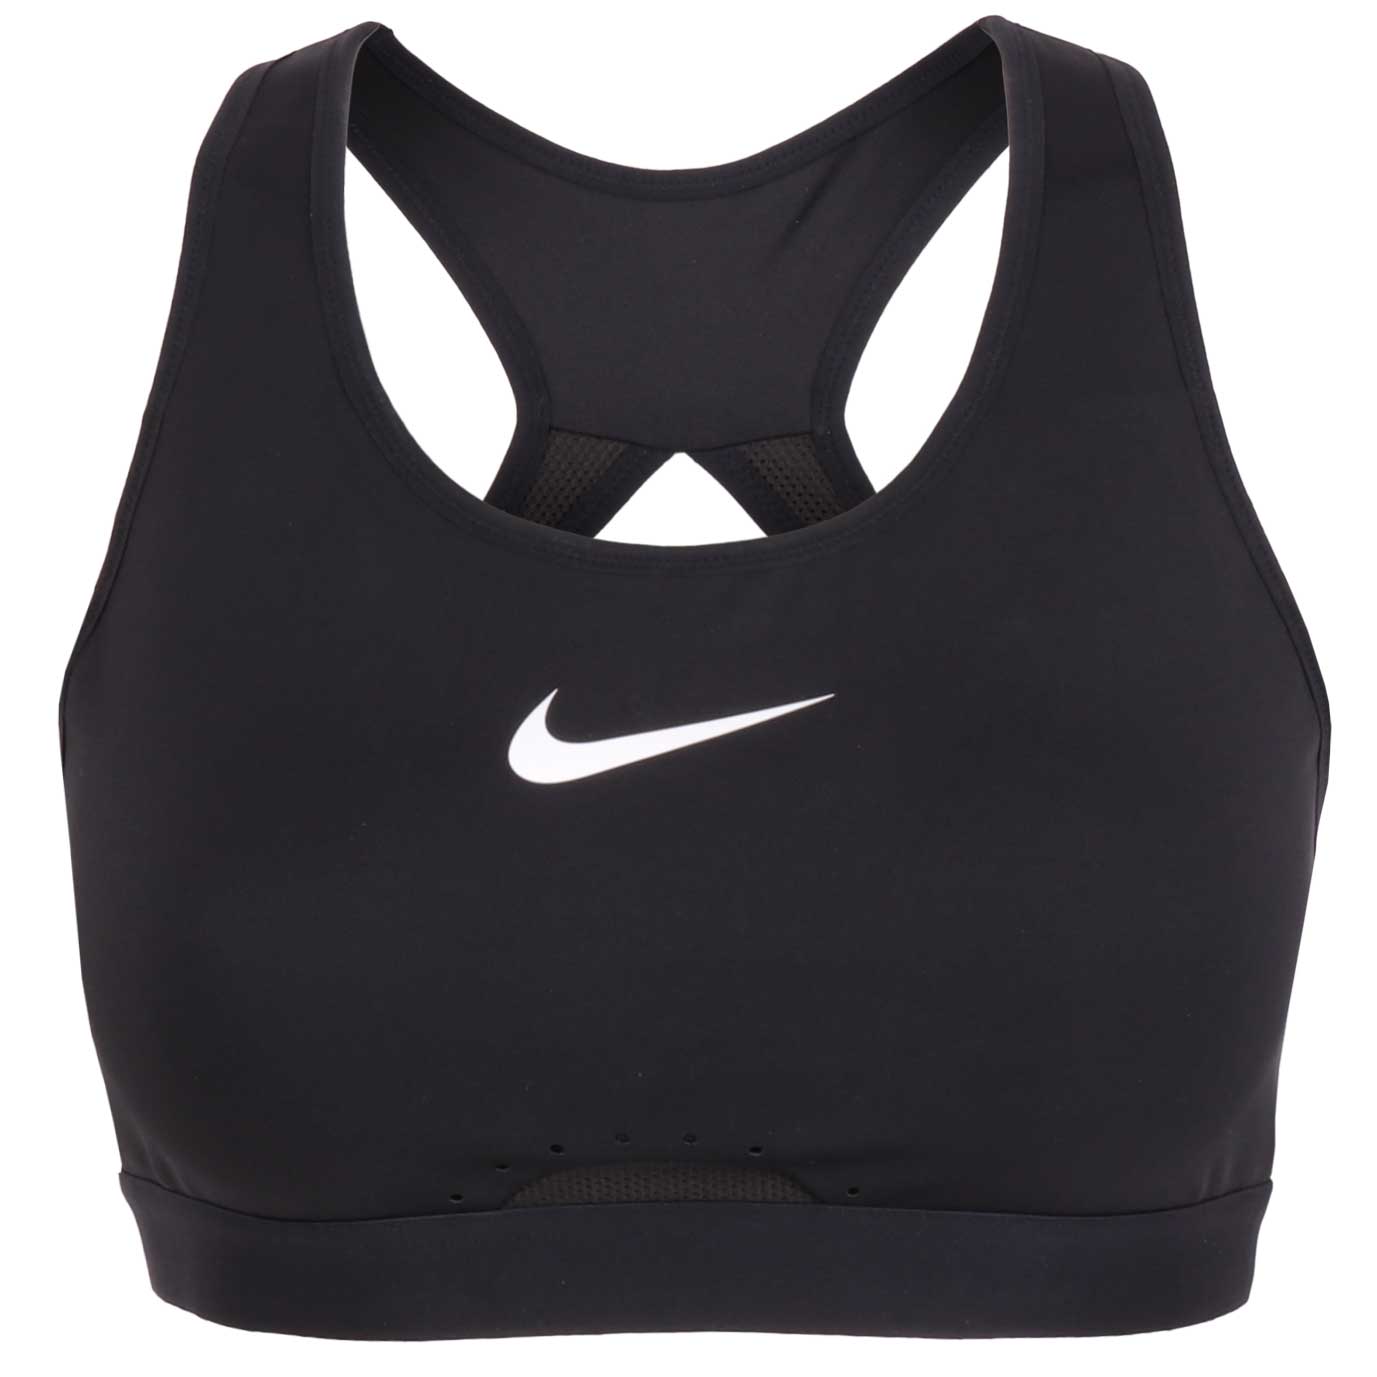 Pack Bonnet + Gants Nike Essential Running Noir Femme